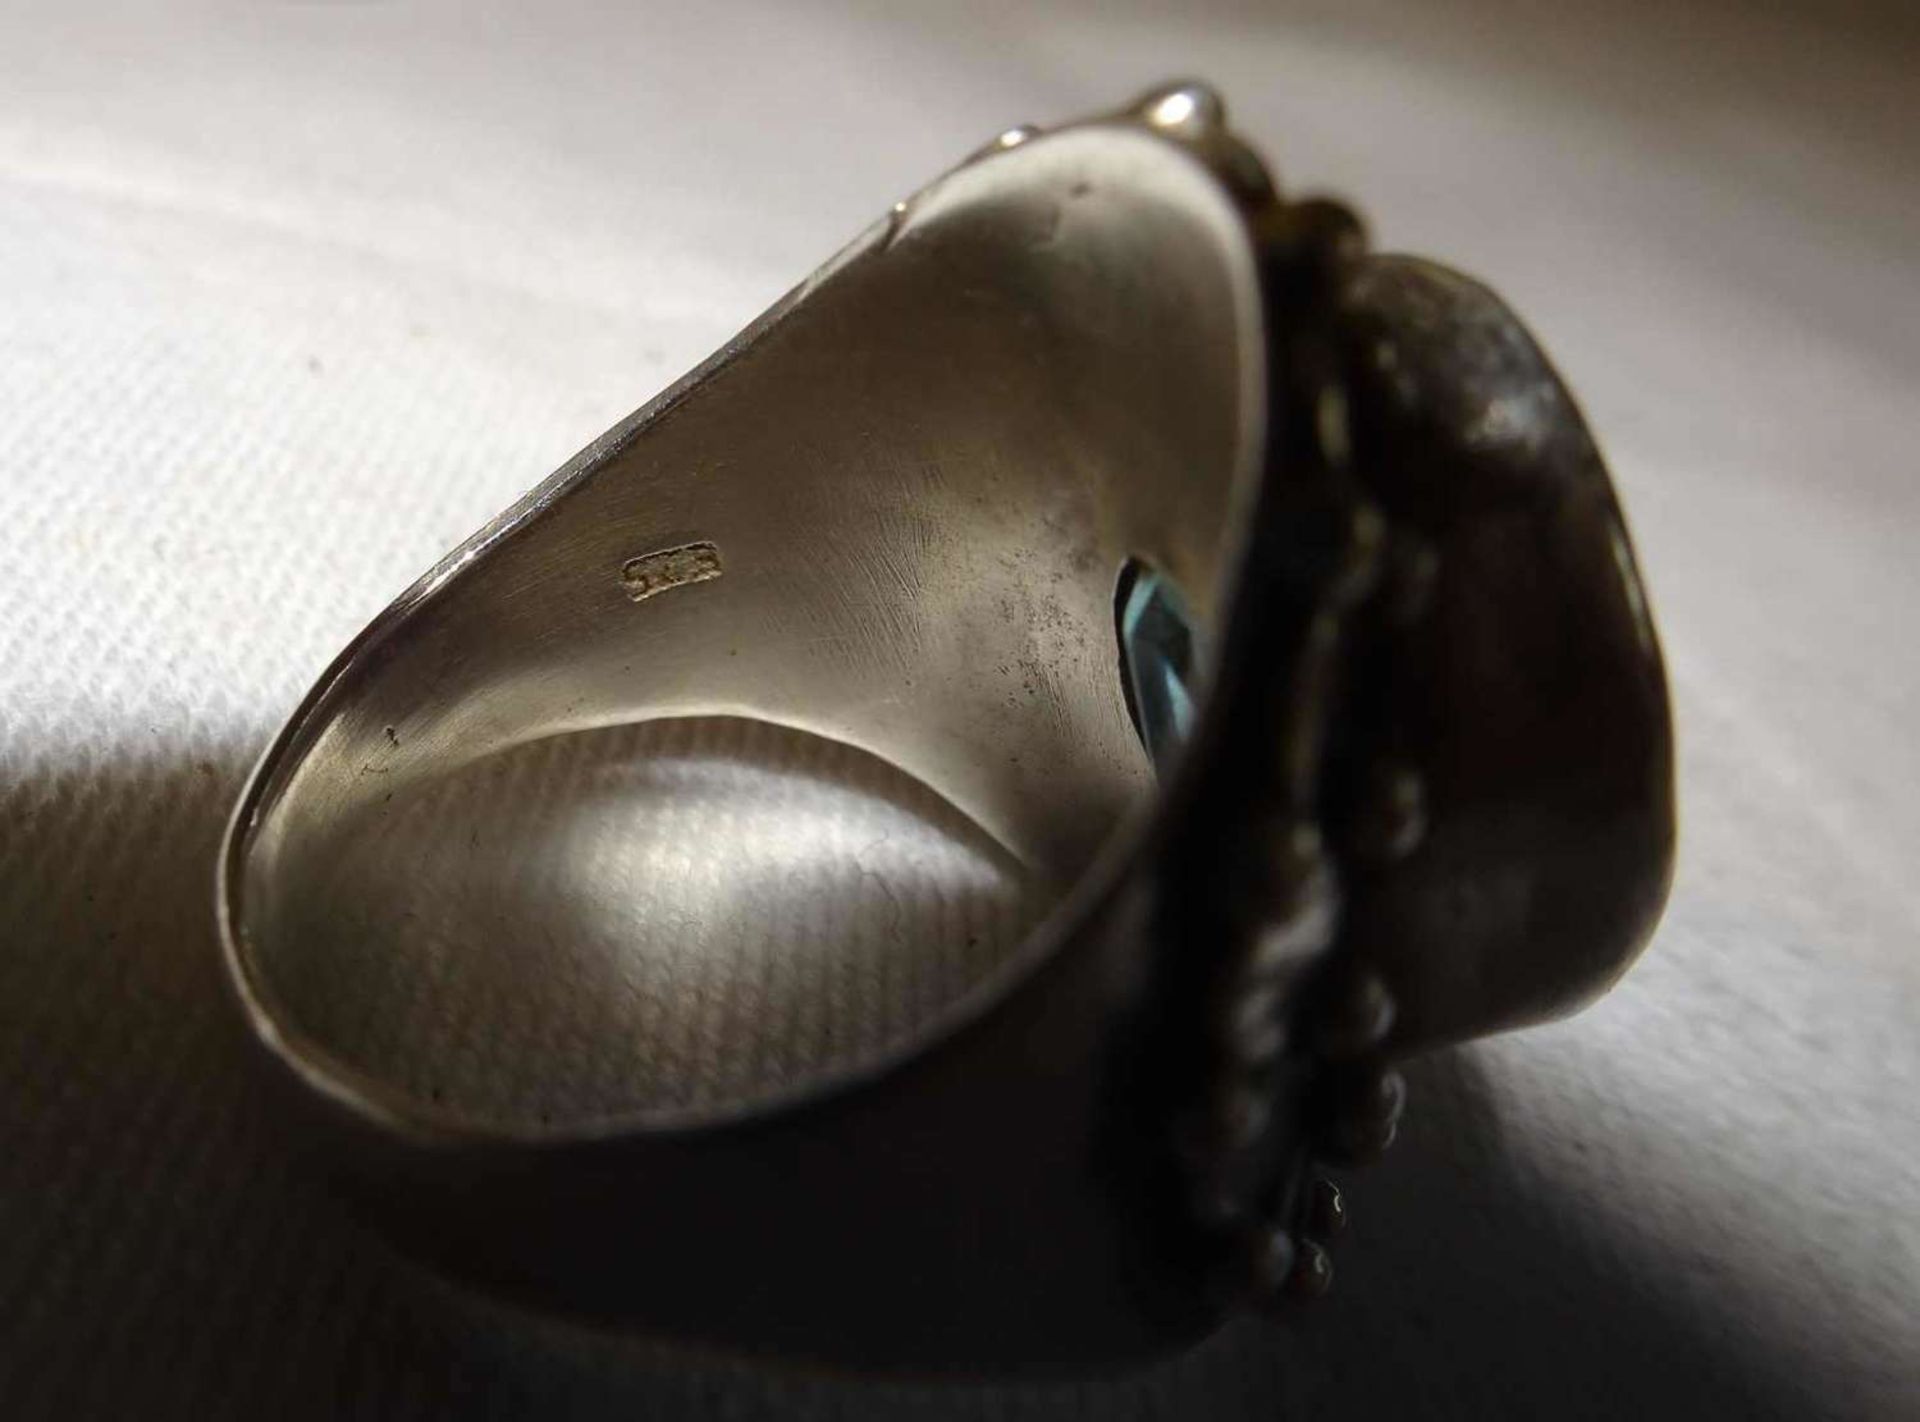 Damenring, 925er Silber, besetzt mit 1 Aquamarin. Handarbeit. Ringgröße 52, Gewicht ca. 9,3 gr. - Bild 3 aus 3